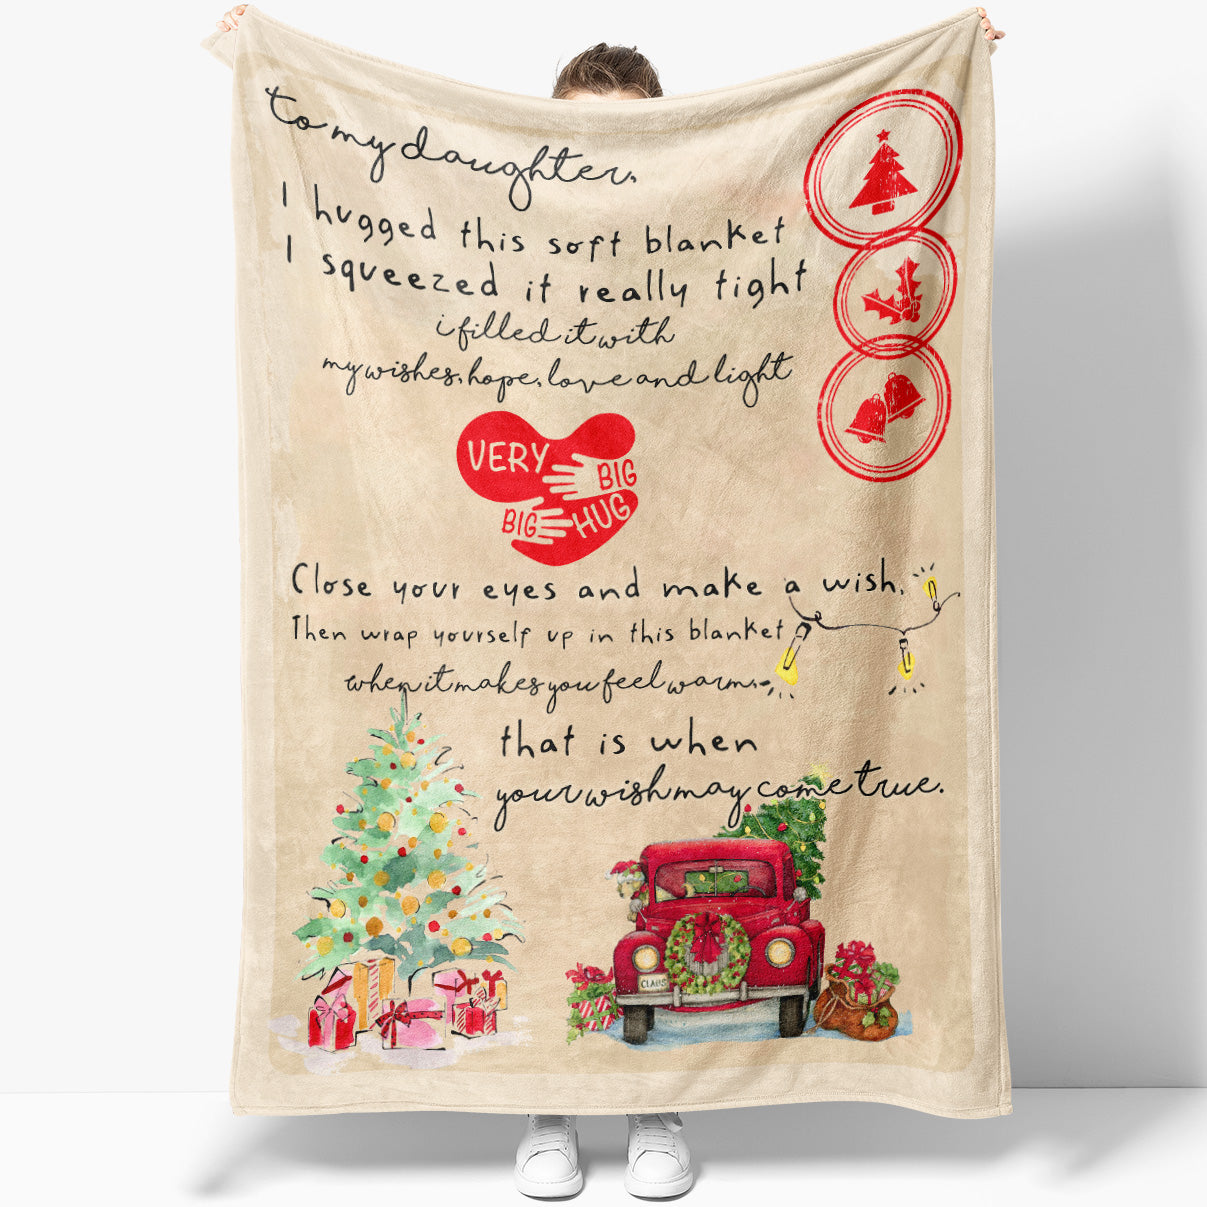 Blanket Christmas Gift For Daughter, Mother Daughter Gifts, Make a Wish, Gifts  For Adult Daughter, Unique Mother Daughter Gifts, Gift For My Daughter -  Sweet Family Gift